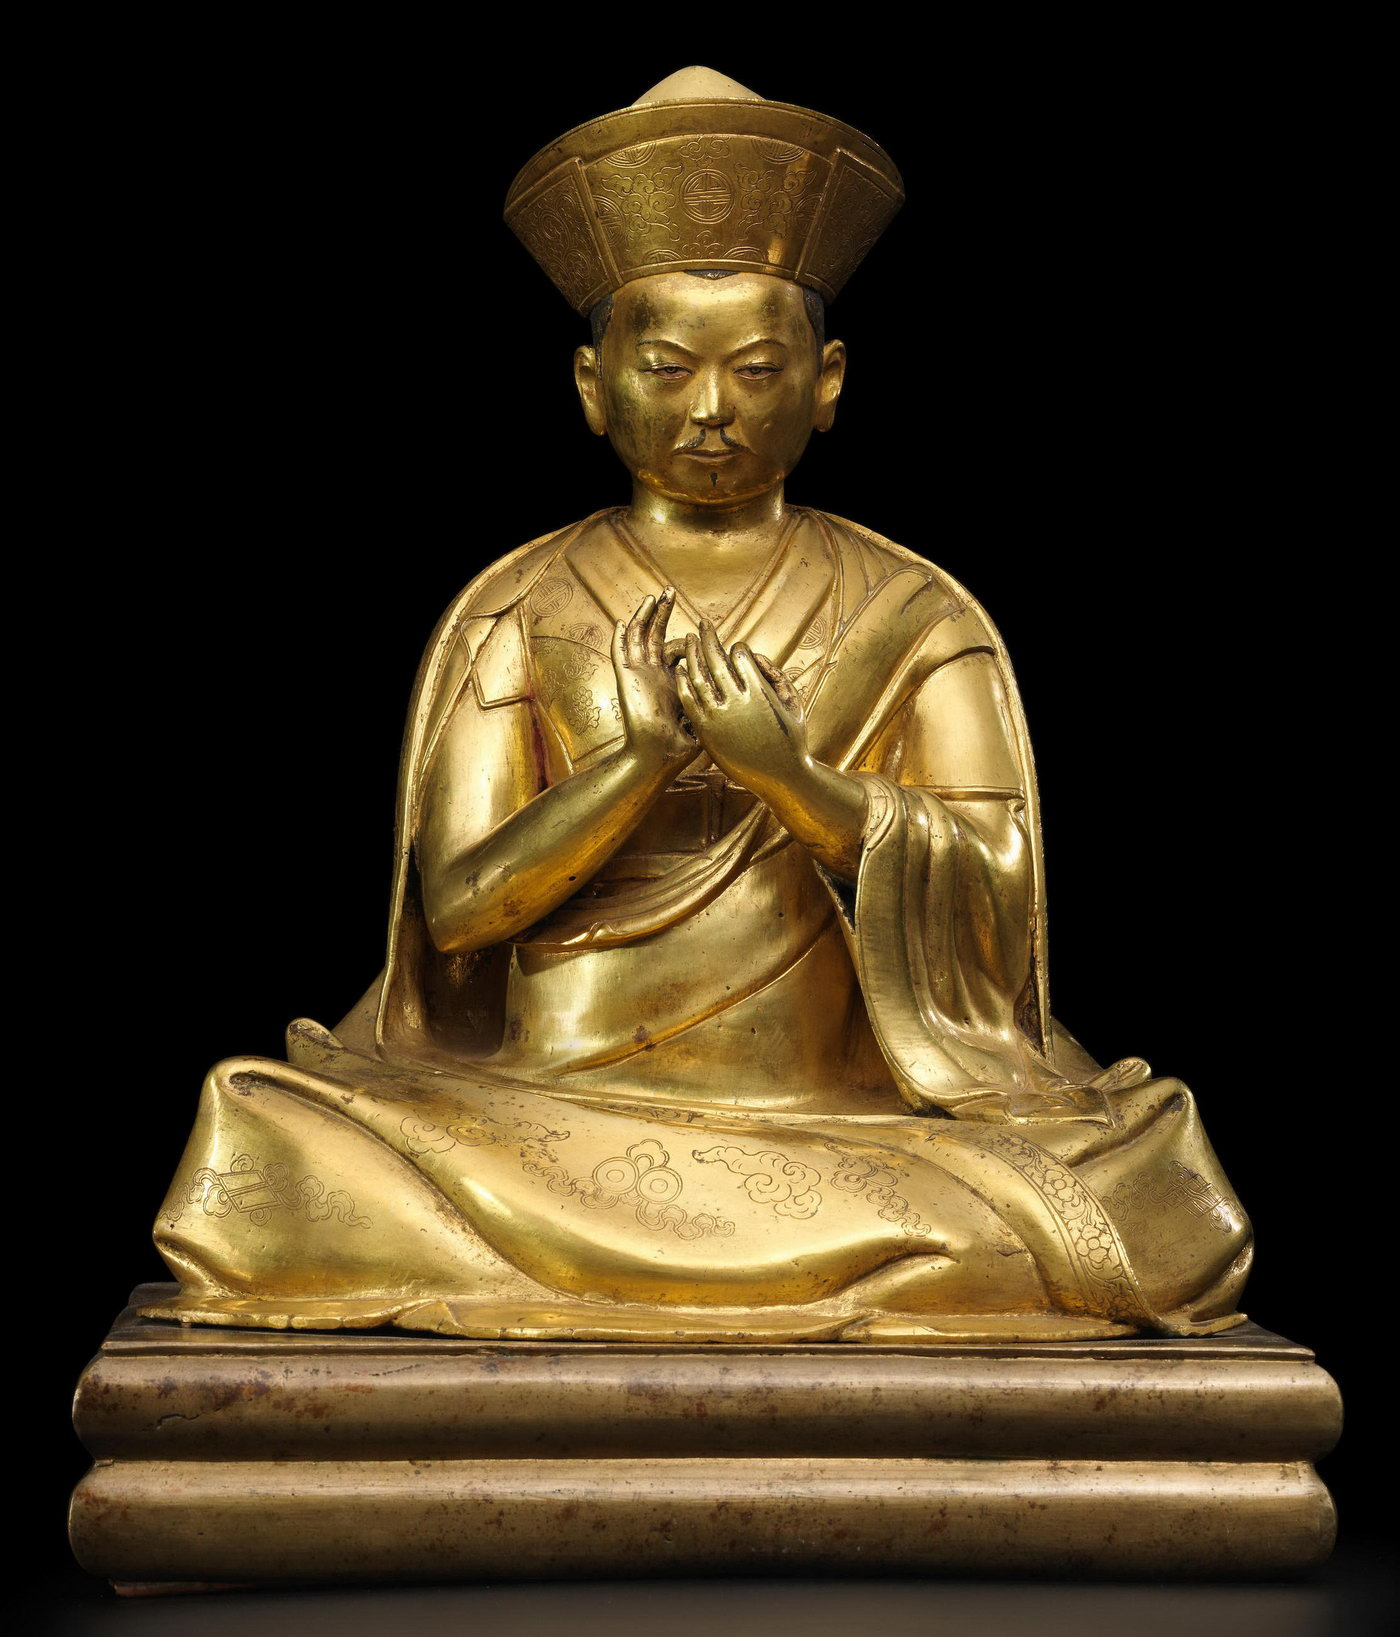 魅力独具的藏传佛教上师像最新拍卖成交价格